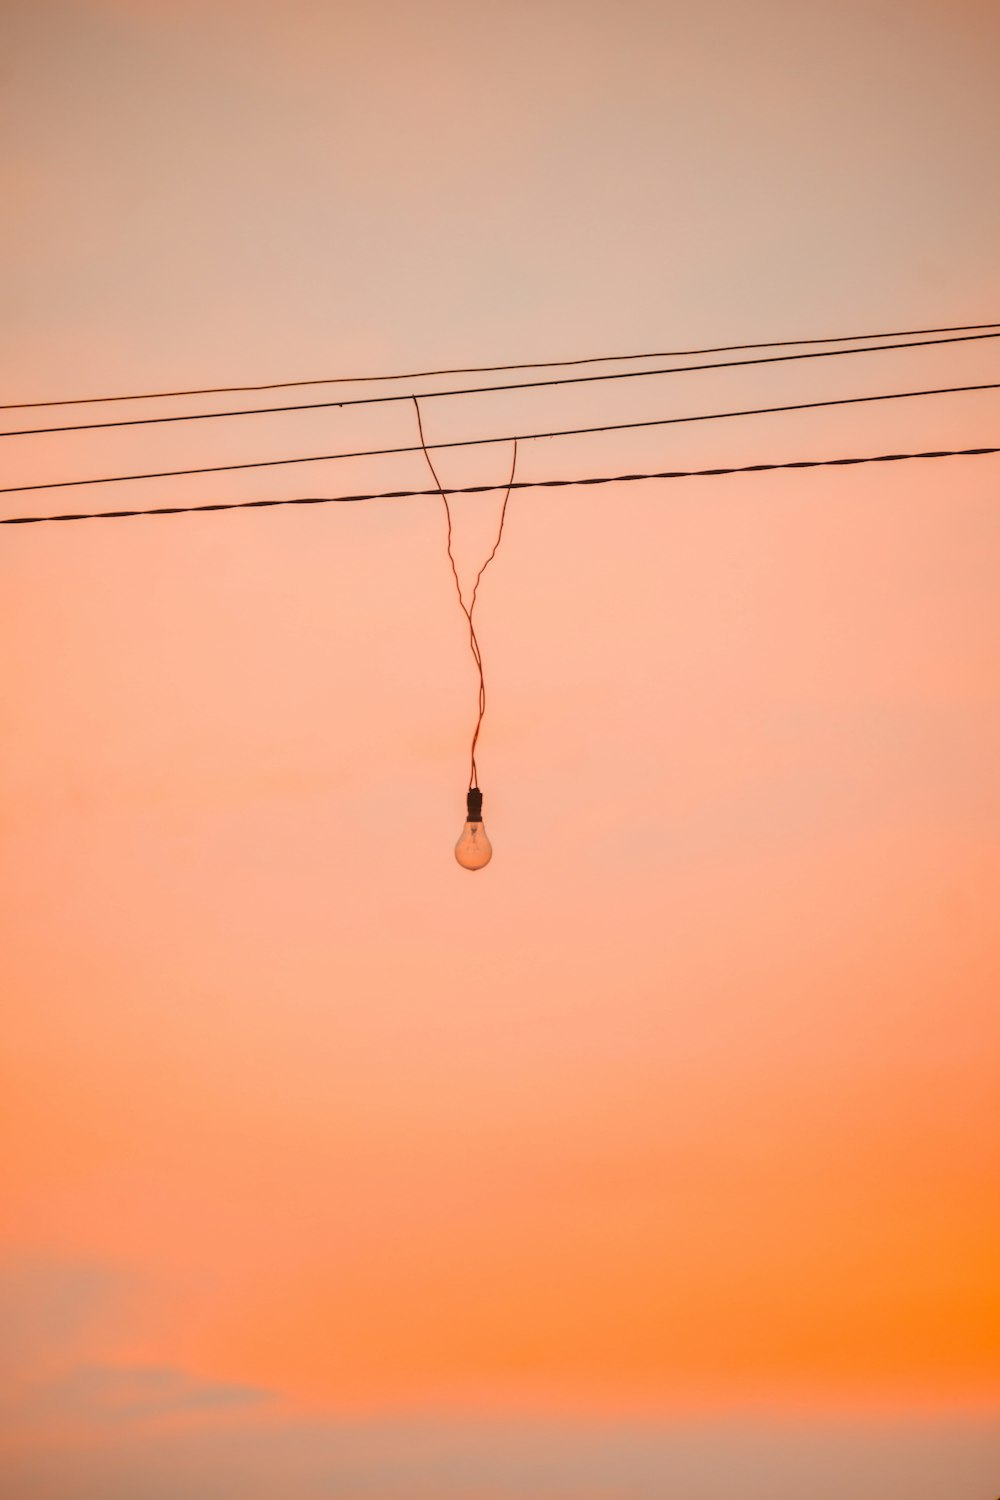 une ampoule suspendue à une ligne électrique au coucher du soleil